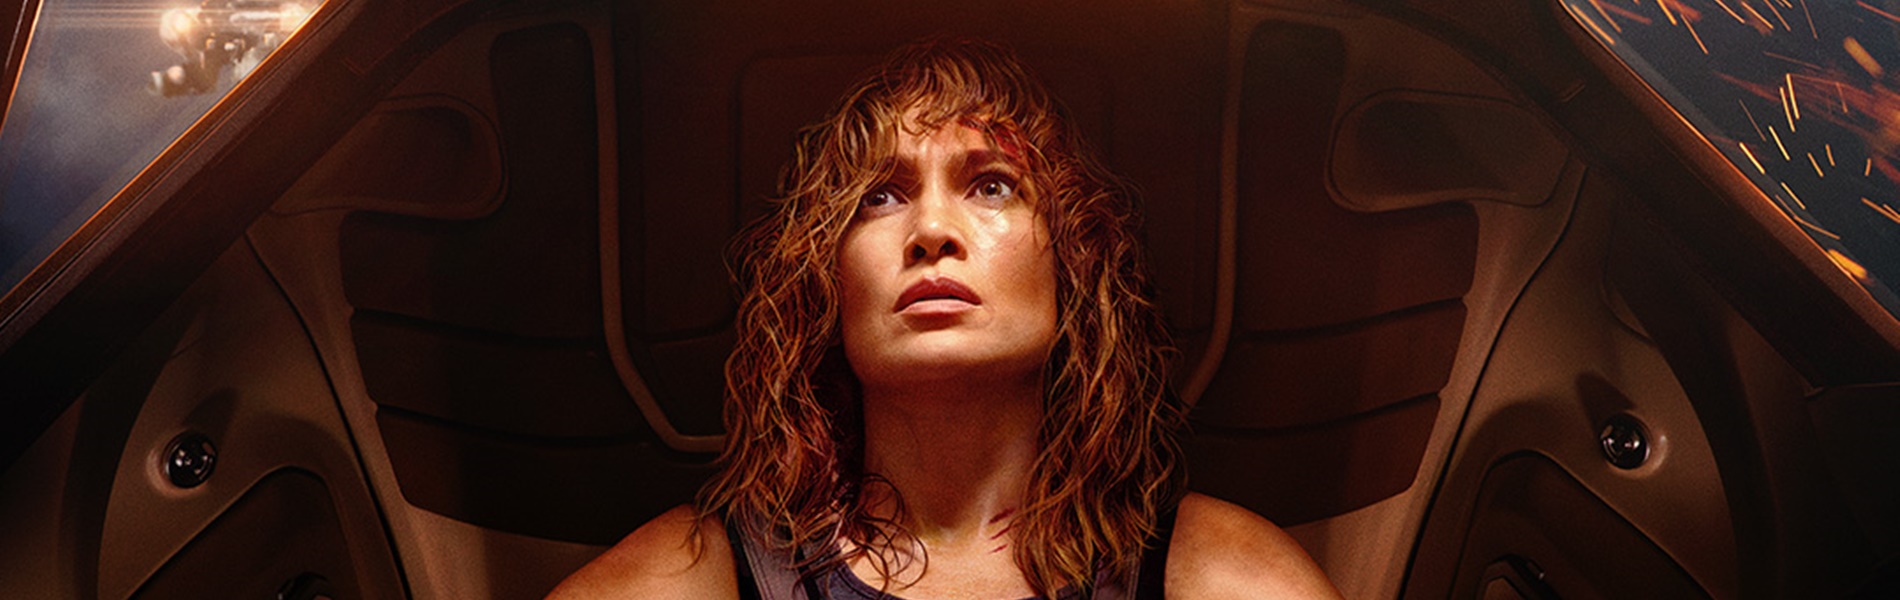 Előzetest kapott Jennifer Lopez sci-fi akciója, amelyben az emberiség sorsa múlik rajta - Atlas